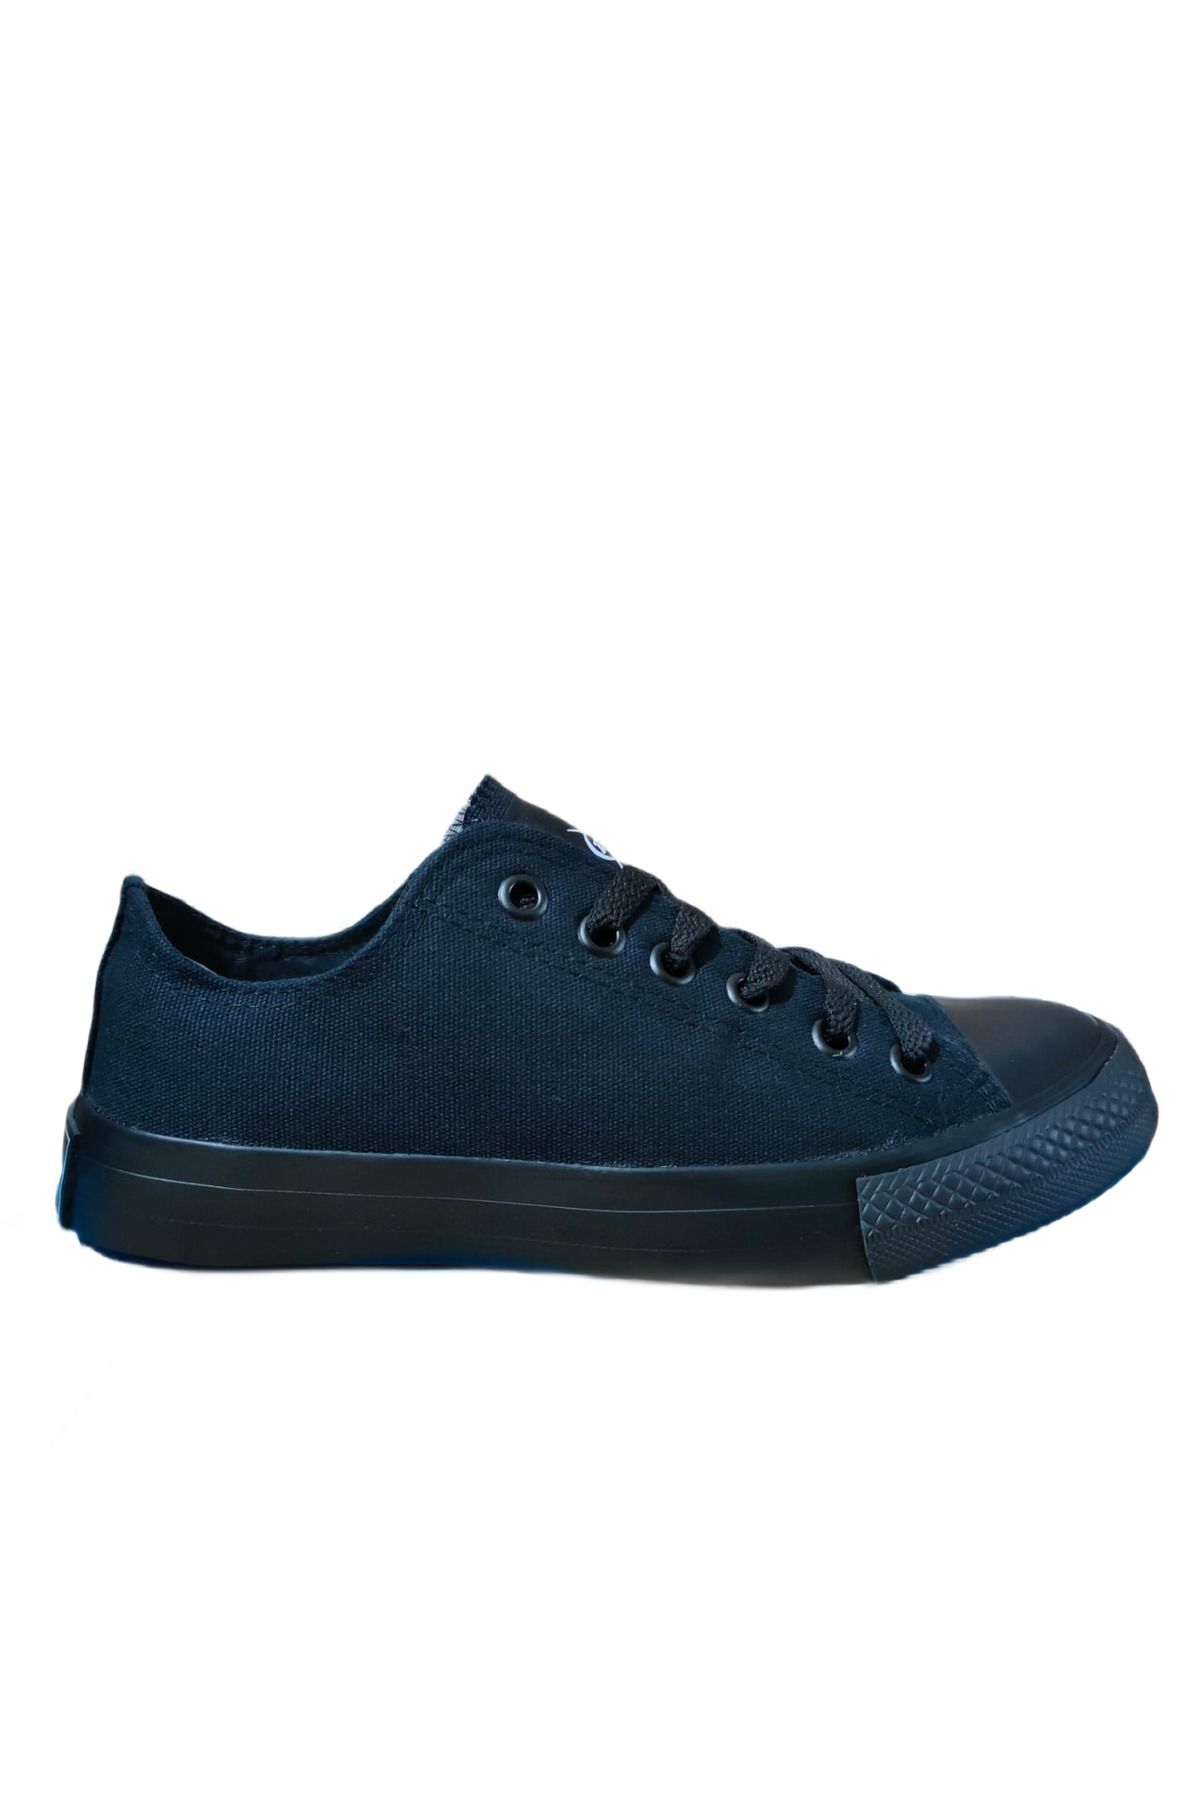 Dunlop Erkek Sneaker Günlük Keten Spor Ayakkabı Full Siyah 1422